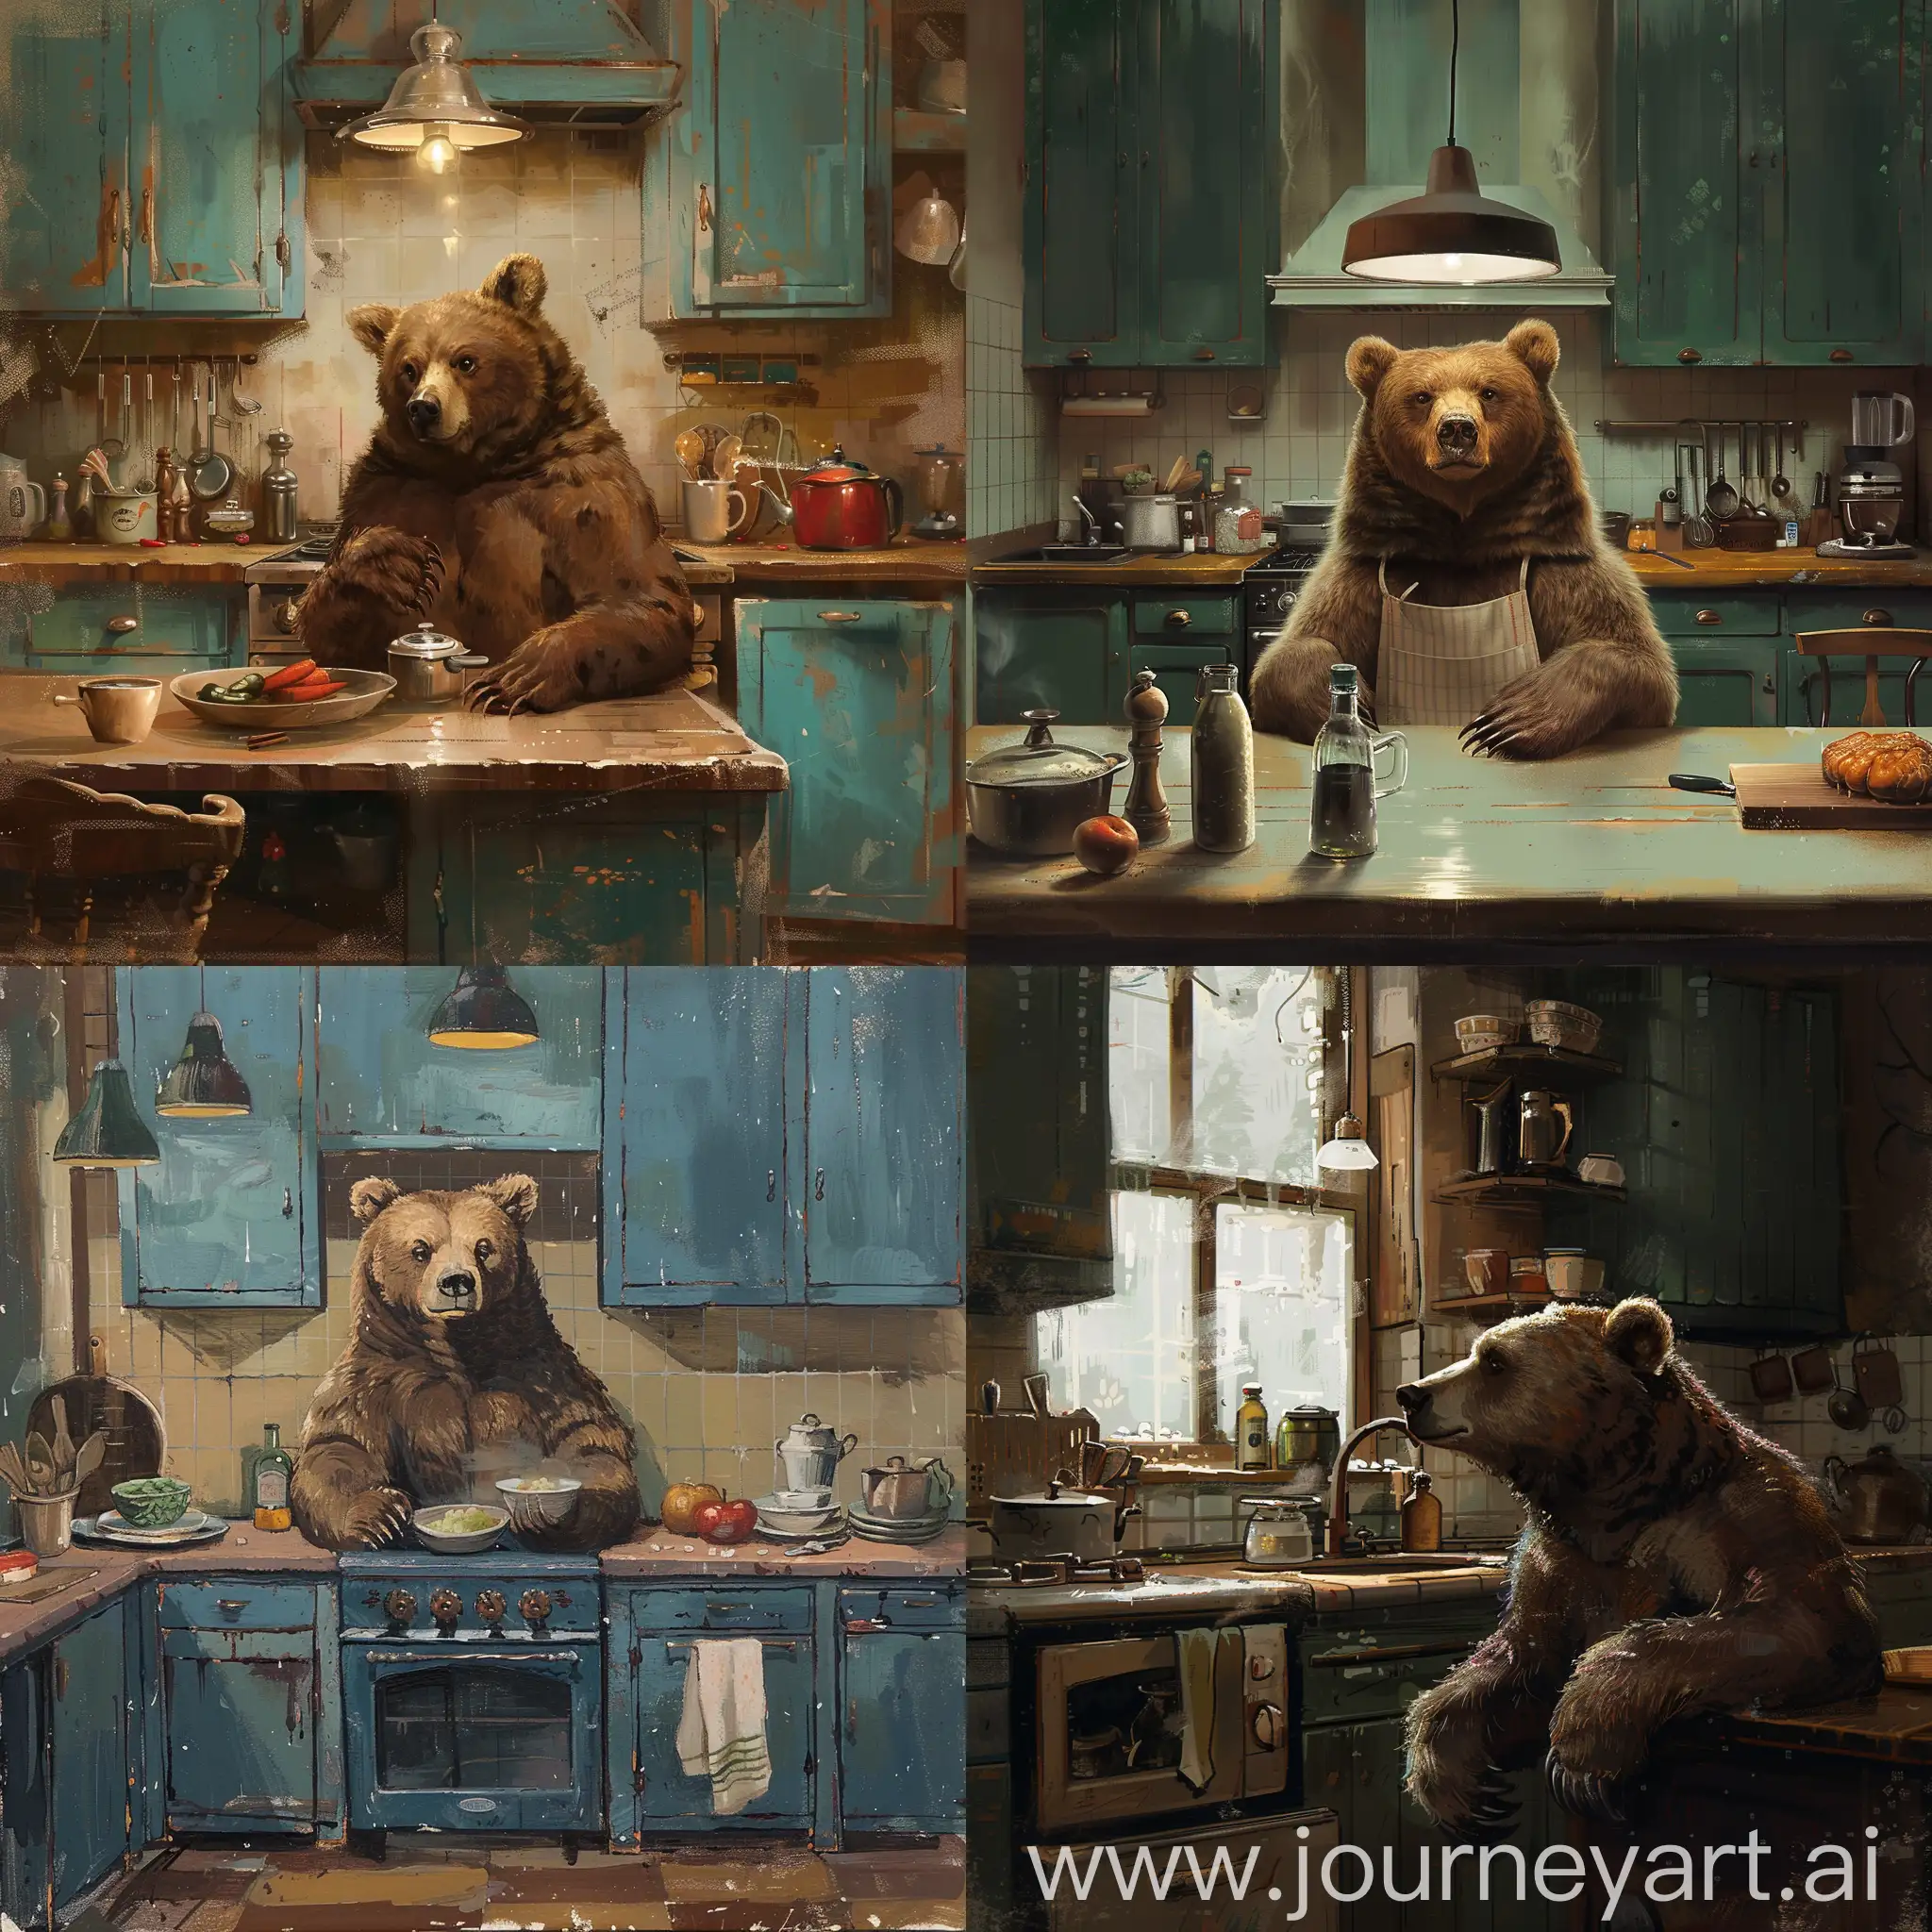 Un oso en una cocina